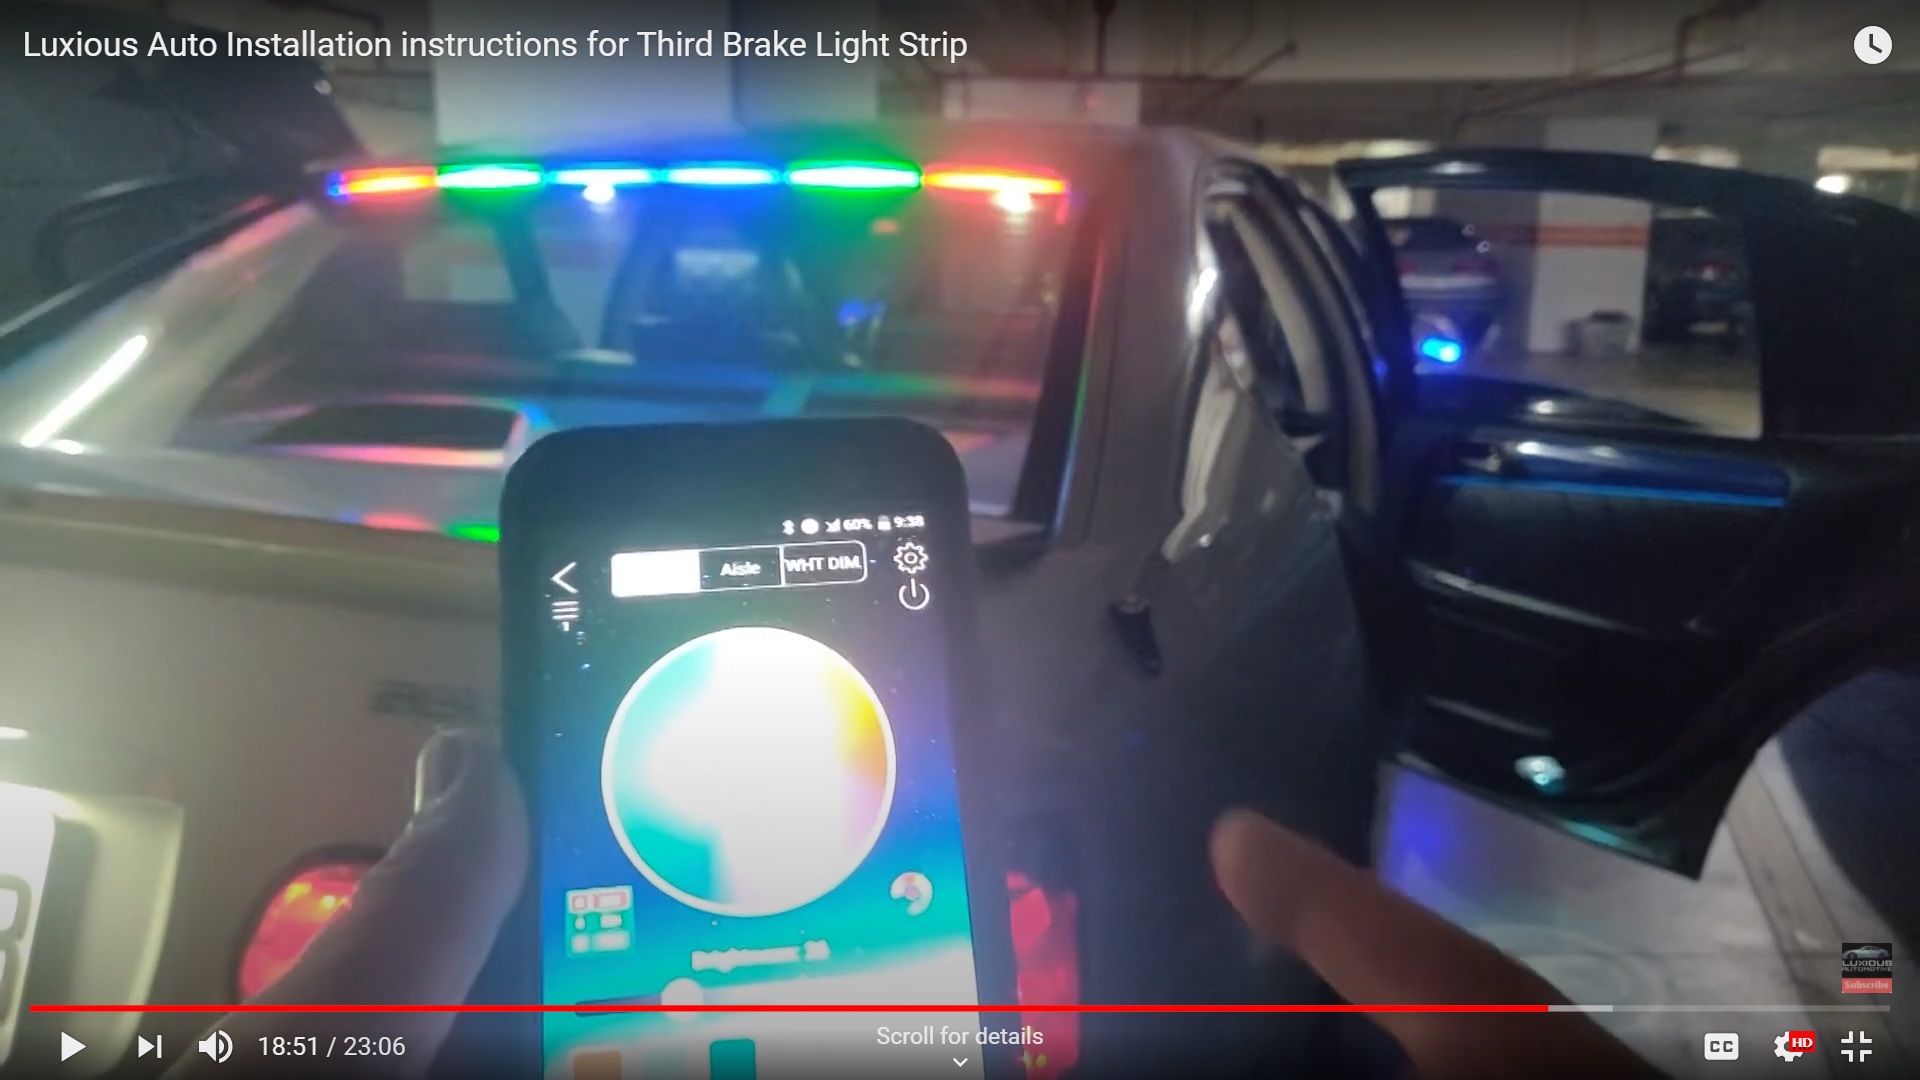 Third Brake Light Kit with Turn Signal & RGB Mode